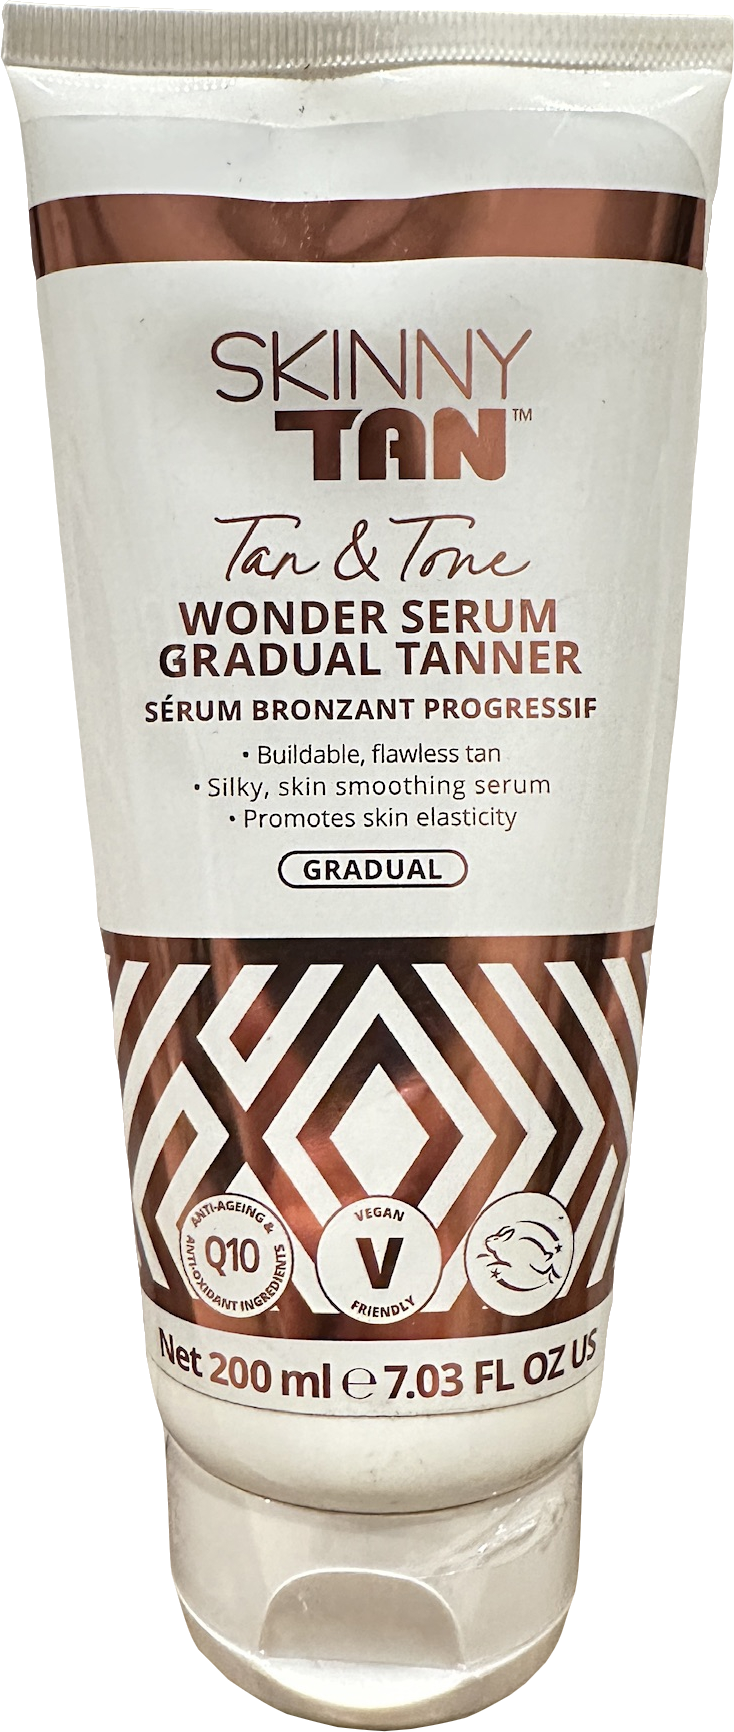 Skinny Tan Tan & Tone Wonder Serum Gradual Tanner 200ml